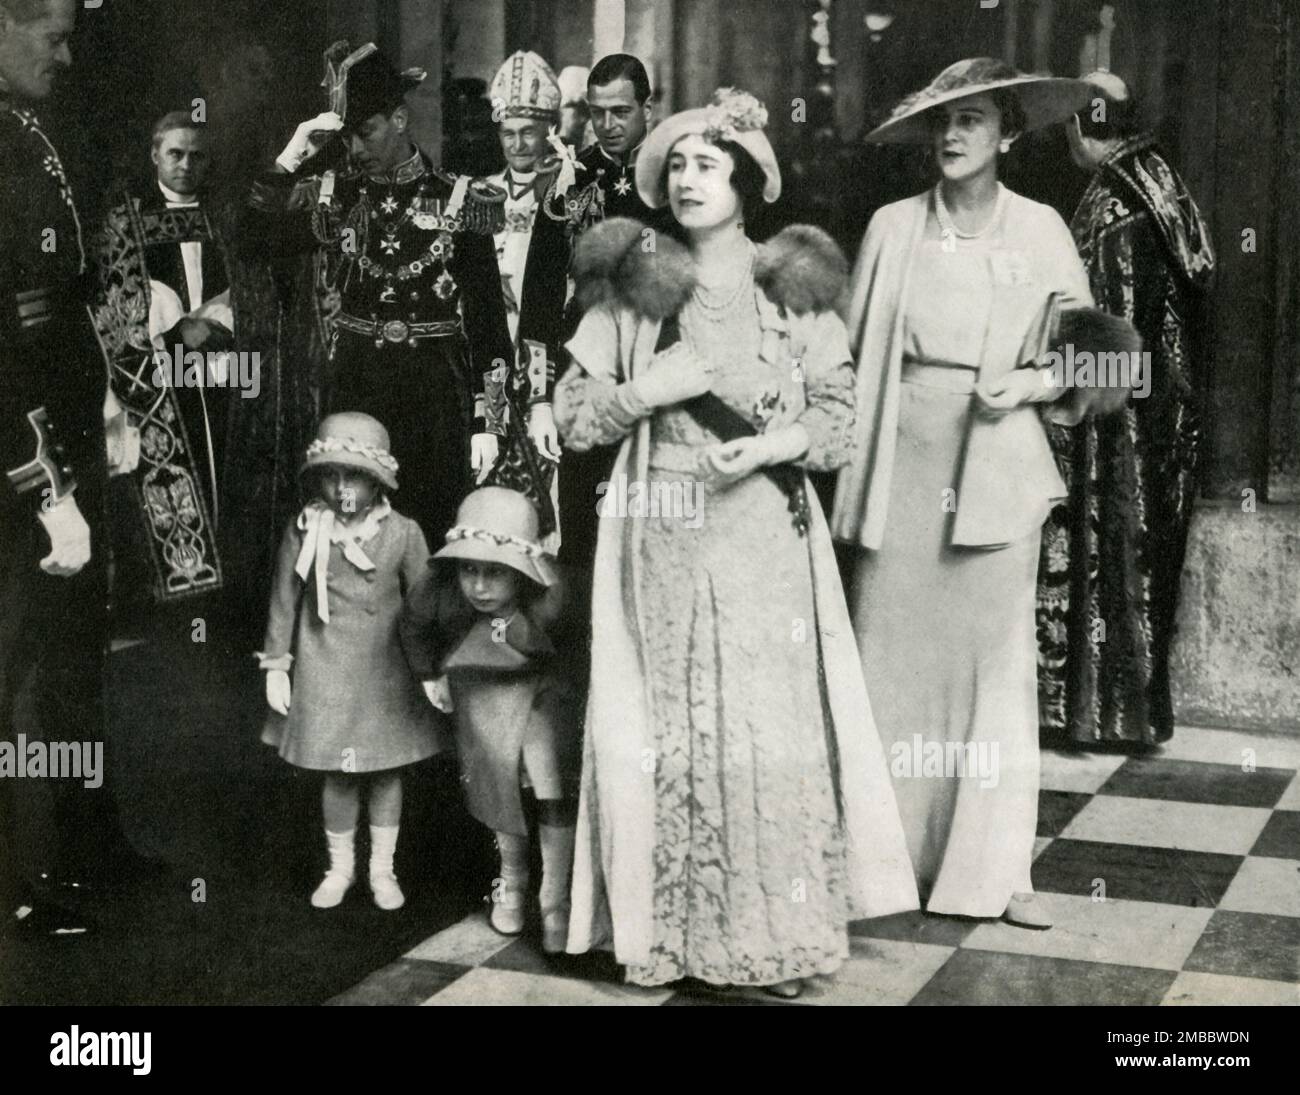 Jubileo de plata de Jorge V y la reina María, 6 de mayo de 1935, (1947). Servicio de Acción de Gracias en la Catedral de San Pablo. El duque y la duquesa de York, (más tarde el rey Jorge VI y la reina Isabel), con la princesa Isabel (futura reina Isabel II) y su hermana menor la princesa Margarita Rosa. En la foto también se encuentran el duque y la duquesa de Kent, y el obispo de Londres. De “La princesa Elizabeth: La historia ilustrada de veintiún años en la vida del presunto heredero”, por Dermot Morrah. [Odhams Press Limited, Londres, 1947] Foto de stock